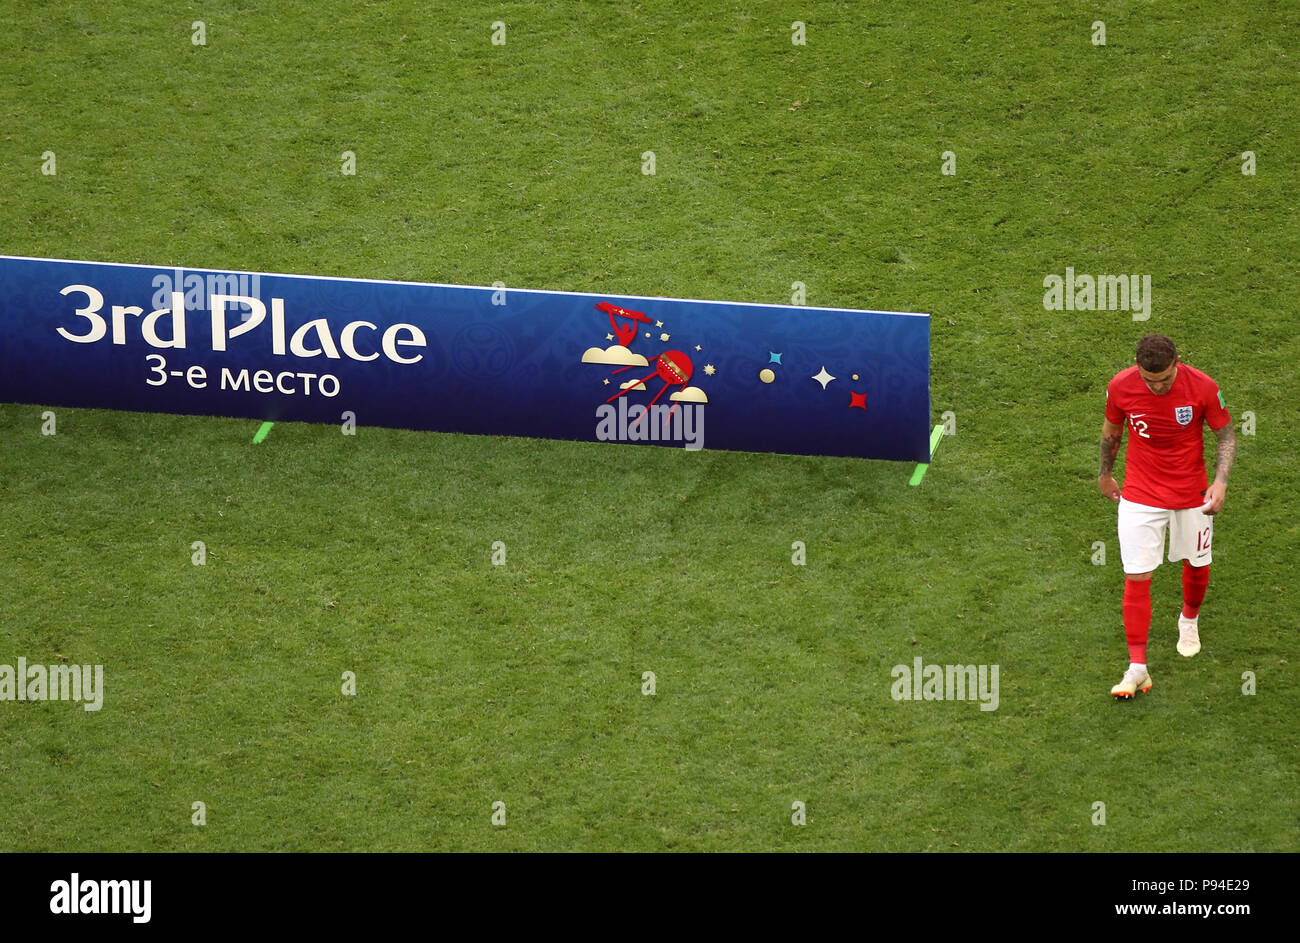 La Inglaterra Kieran Trippier aparece abatido tras el pitido final durante la Copa Mundial de la FIFA el tercer lugar play-off coinciden en San Petersburgo Stadium. Foto de stock